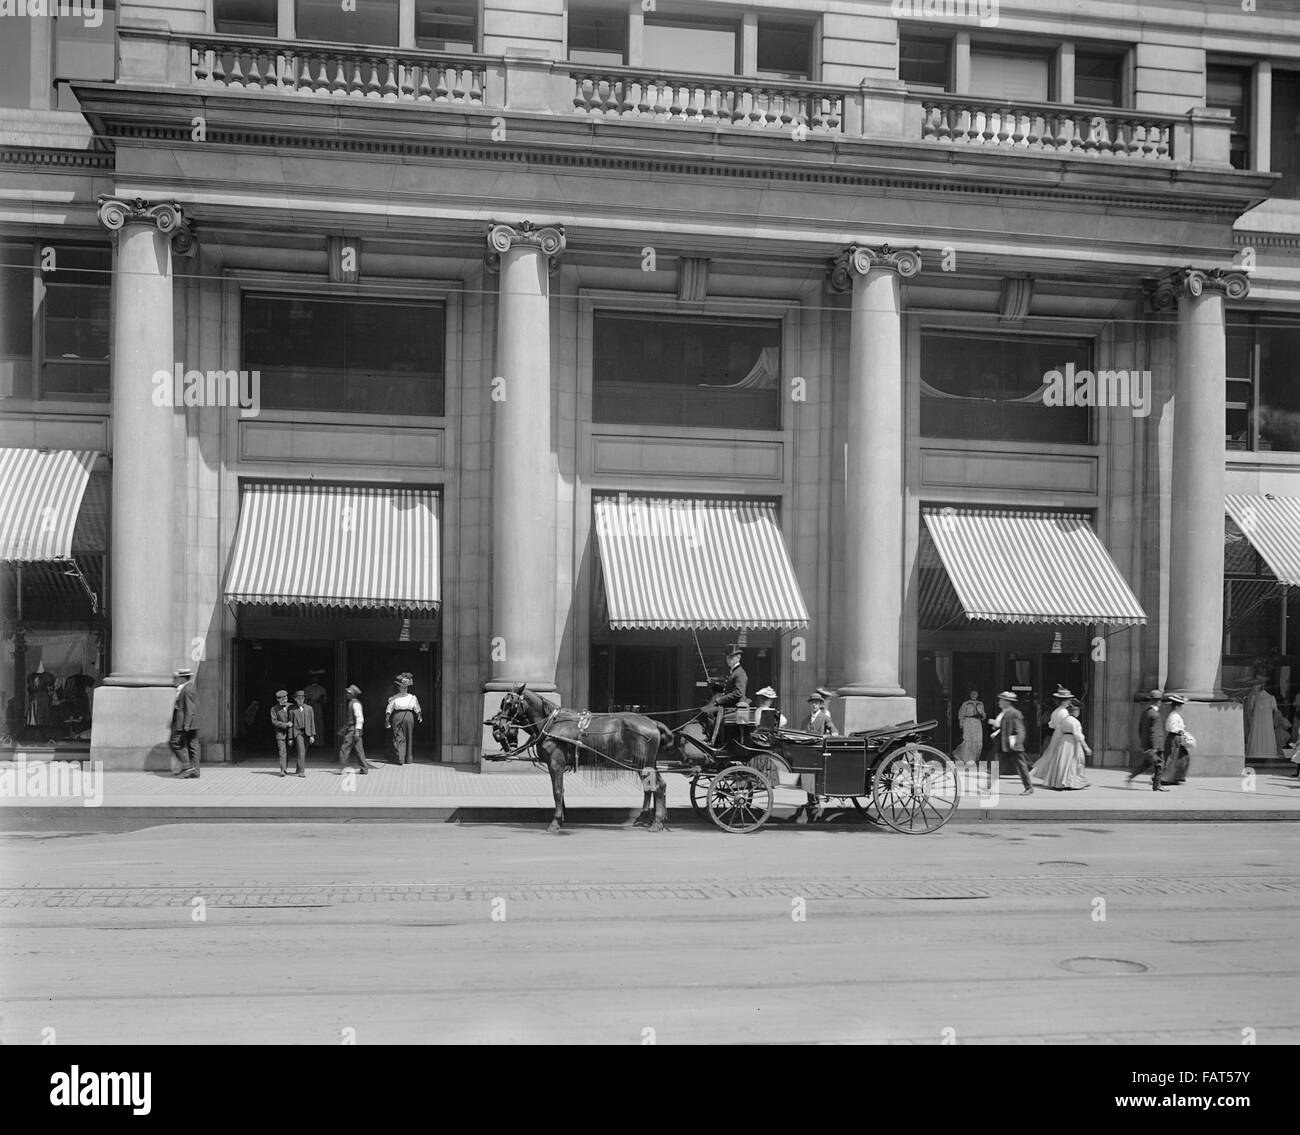 La entrada a la tienda de Marshall Field, Chicago, Illinois, EE.UU., circa 1908 Foto de stock